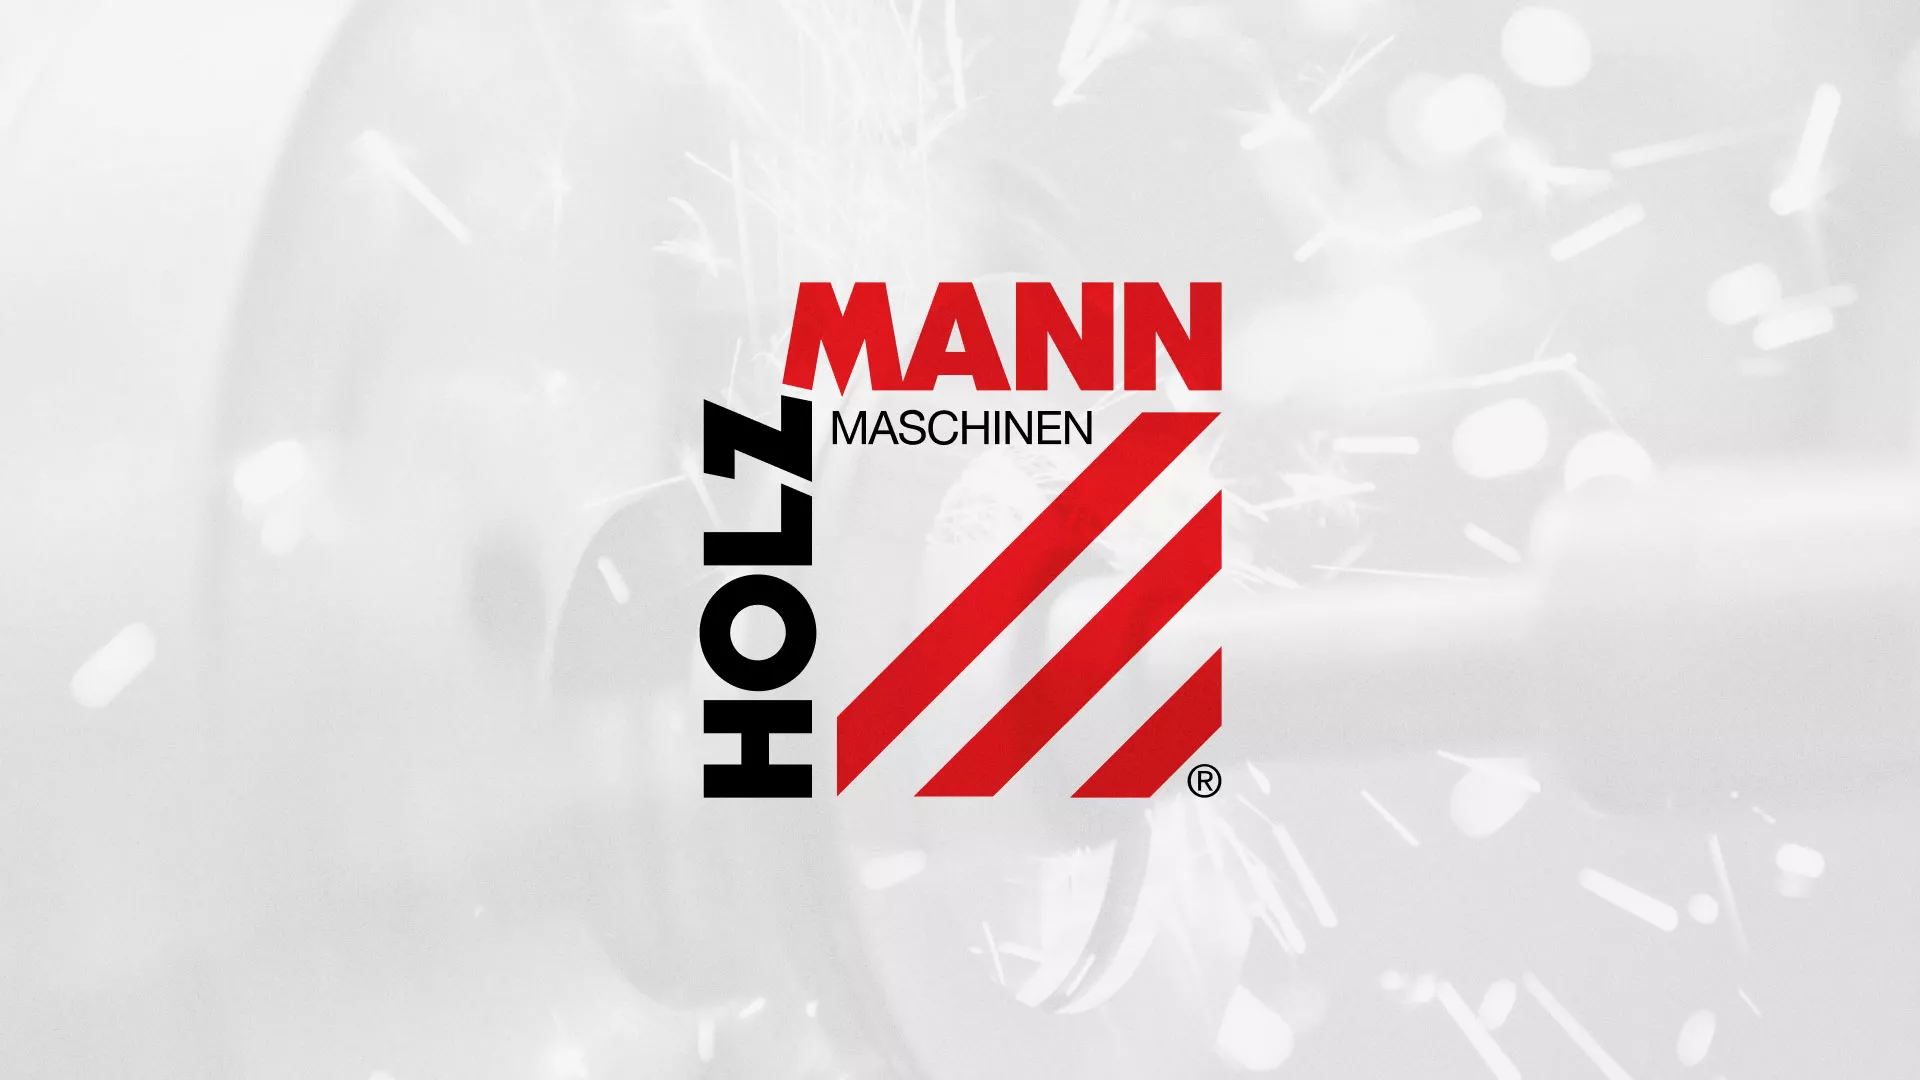 Создание сайта компании «HOLZMANN Maschinen GmbH» в Щелково